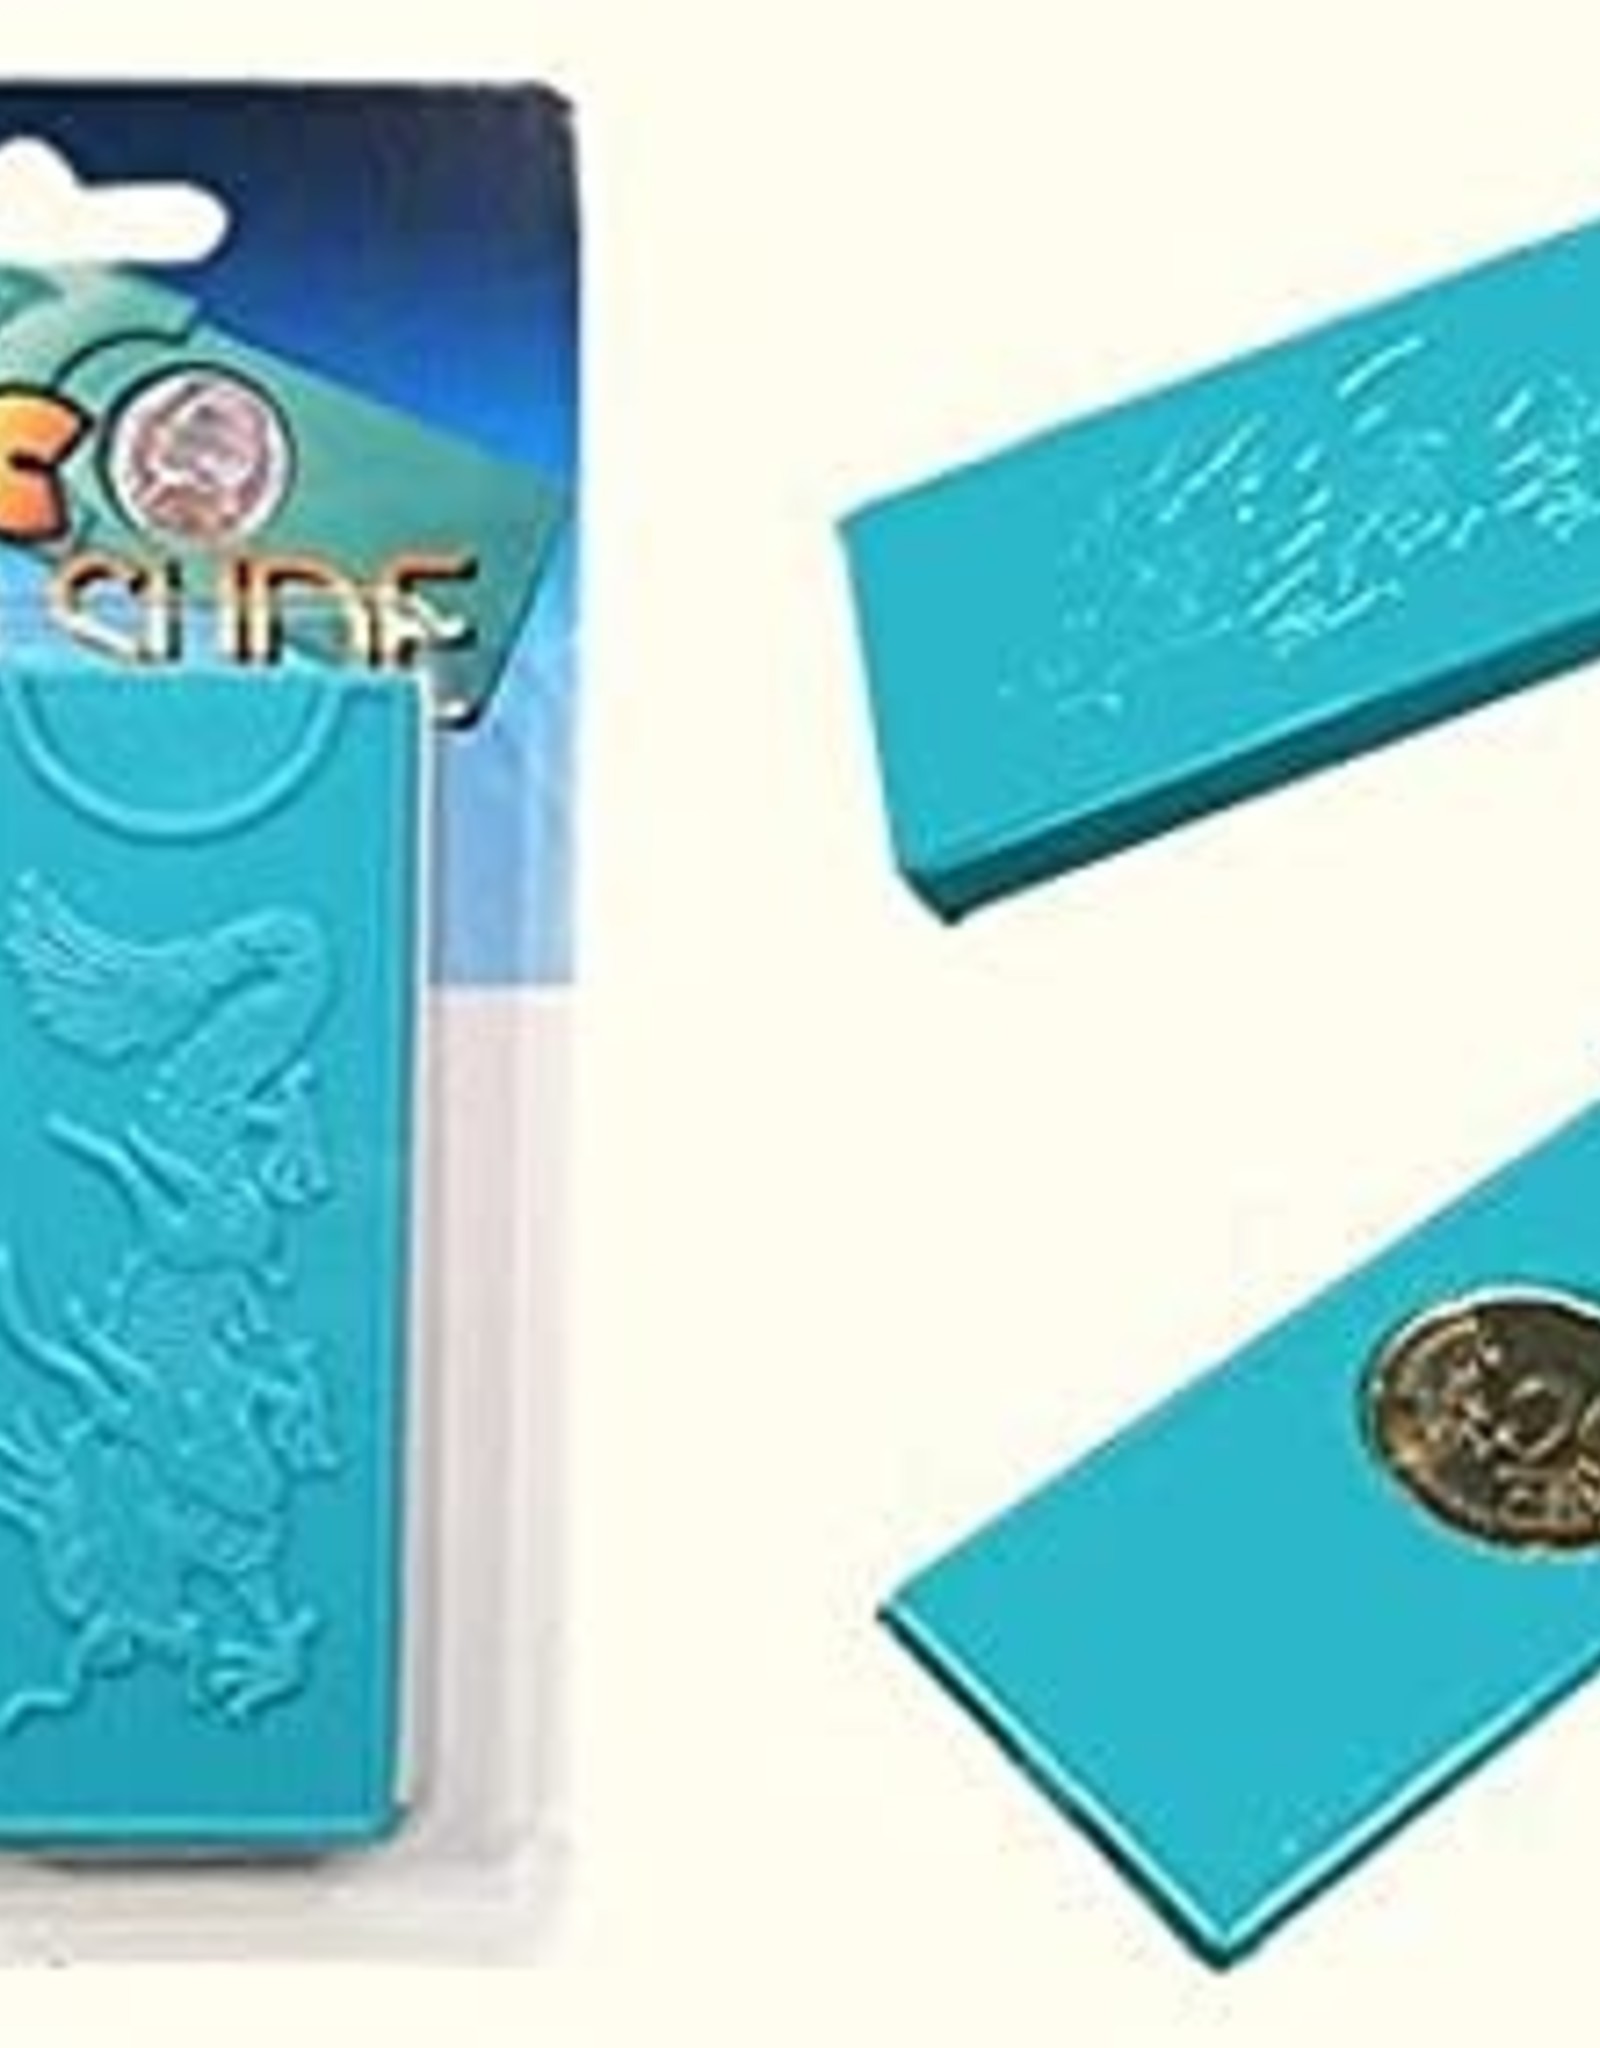 Magic Coin Slide